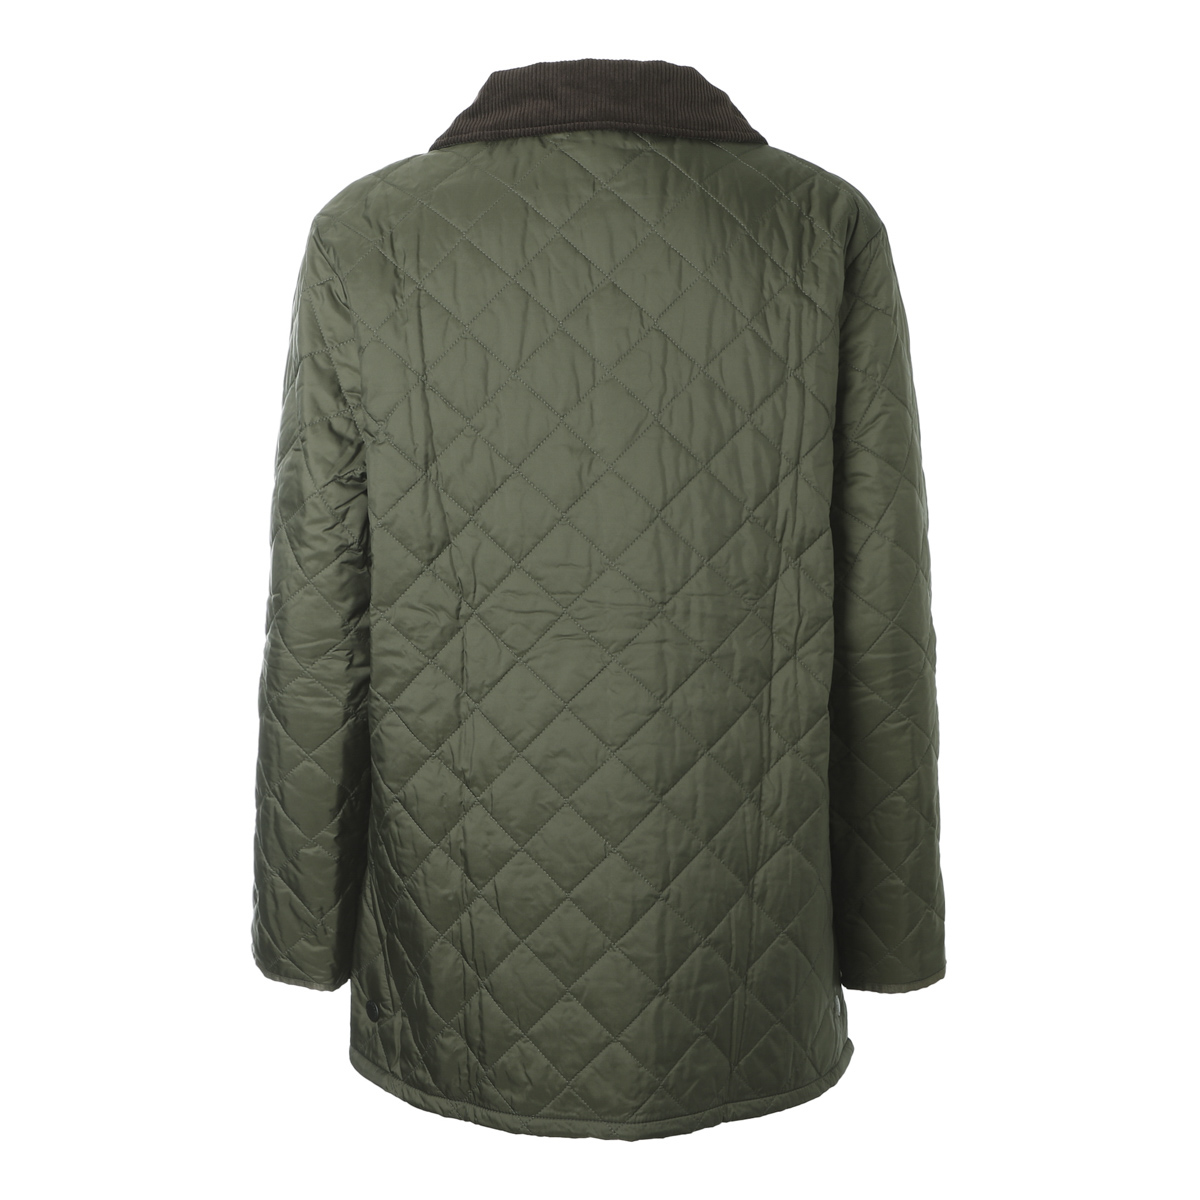  Bab a-Barbour стеганная куртка BARBOUR LIDDESDALE QUILT стеганое полотно блузон мужской mqu0001ol91-olive